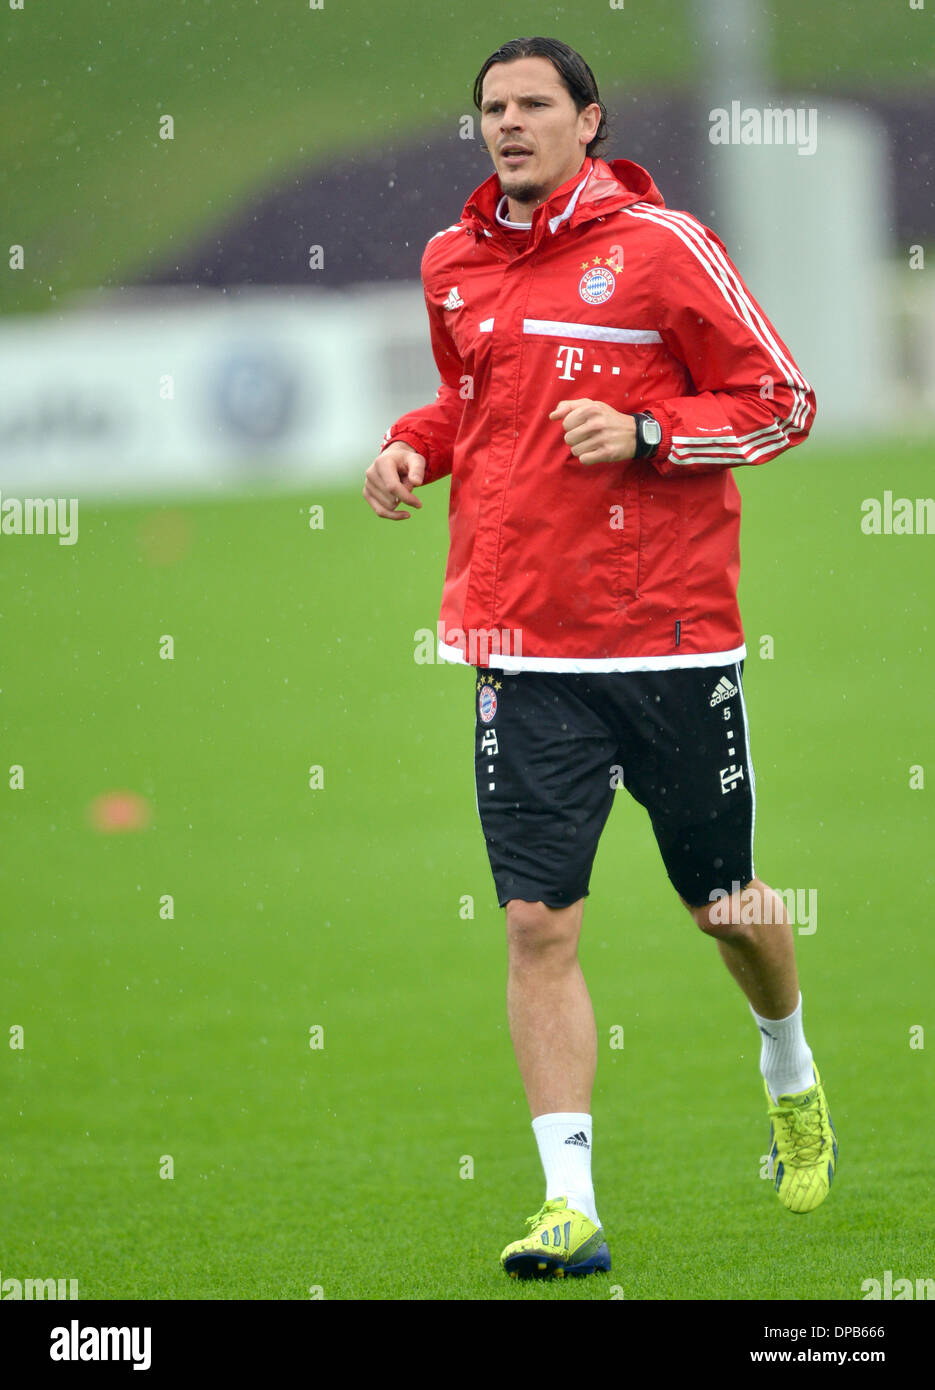 Daniel van Buyten vom FC Bayern München trainiert am 11.01.2014 in Doha (Katar) auf dem Trainingsplatz. Die Mannschaft hält sich bis zum 13.01.2014 in Katar auf. Foto: Peter Kneffel/dpa Stock Photo